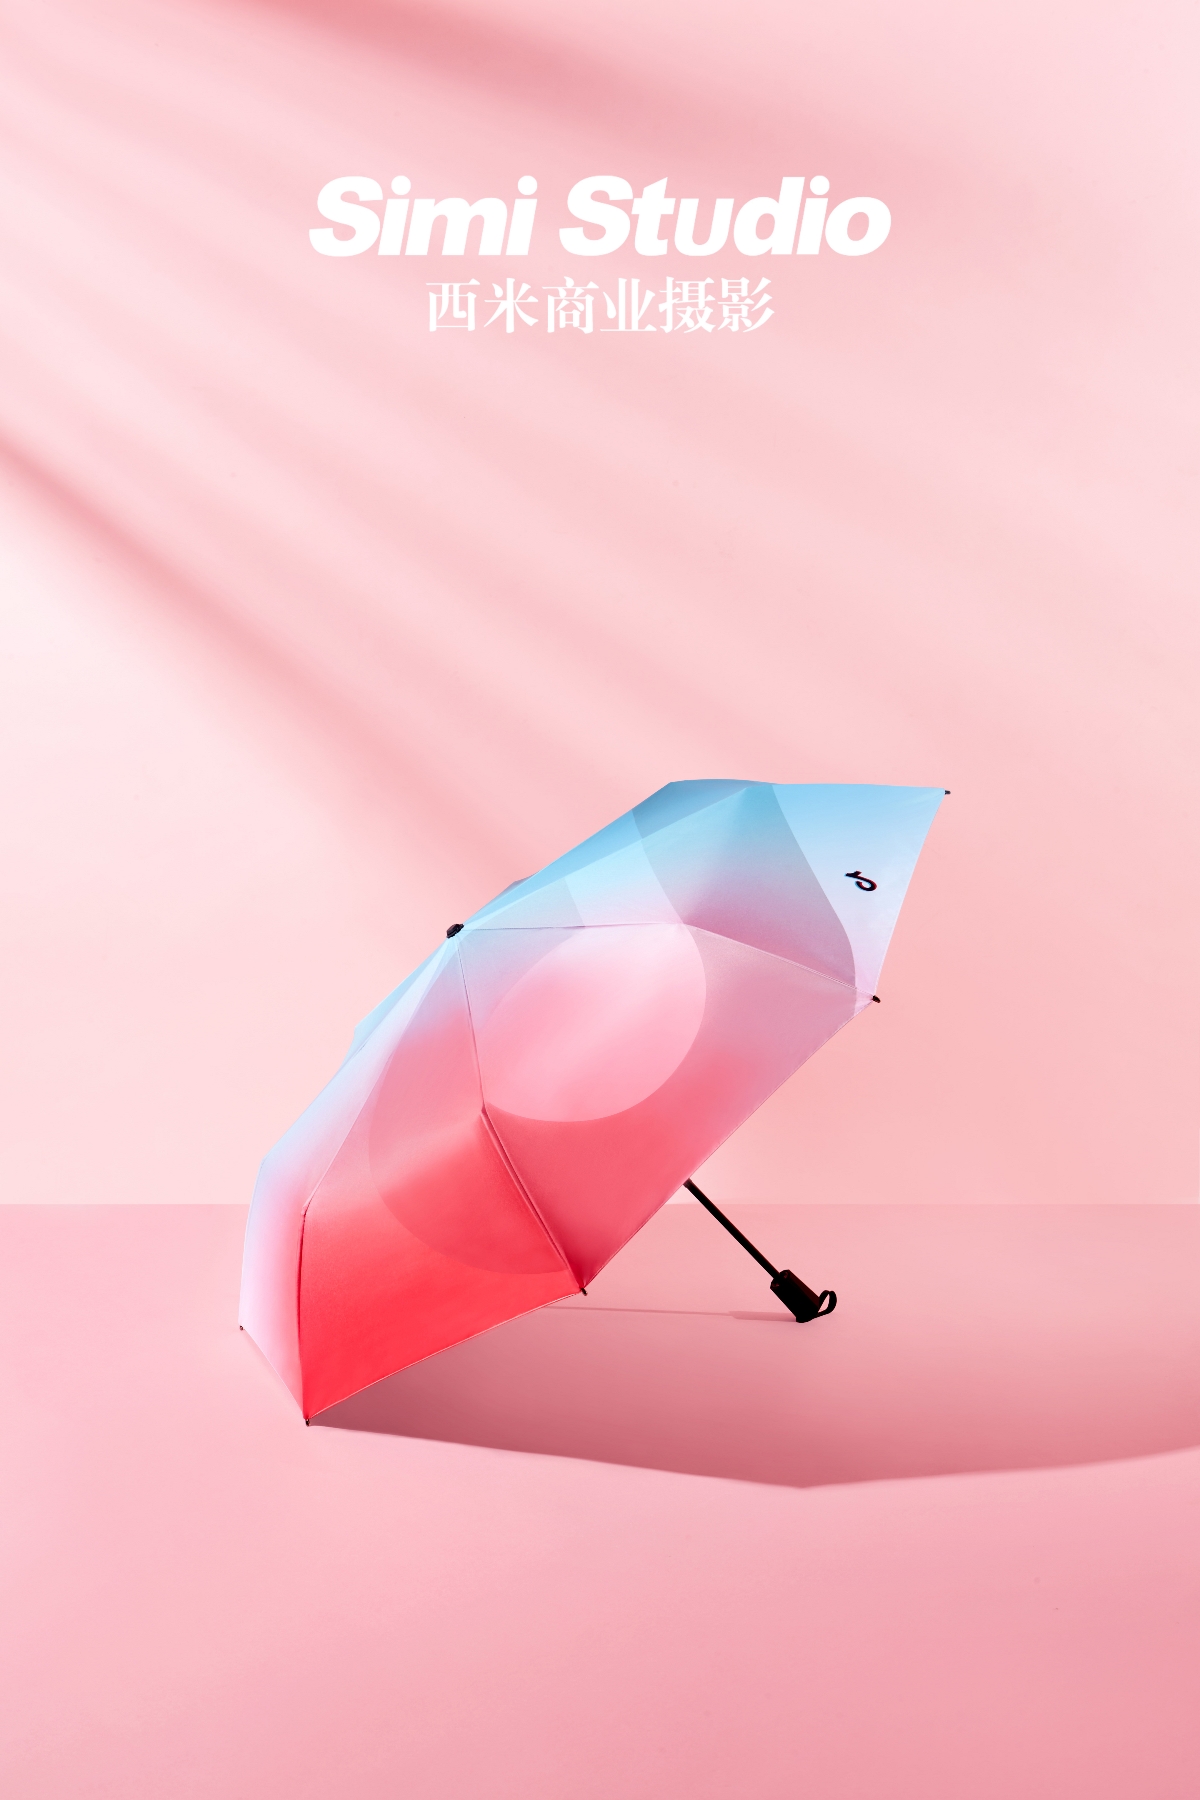 彩色雨伞拍摄 电商摄影 淘宝摄影 静物摄影 北京西米商业摄影